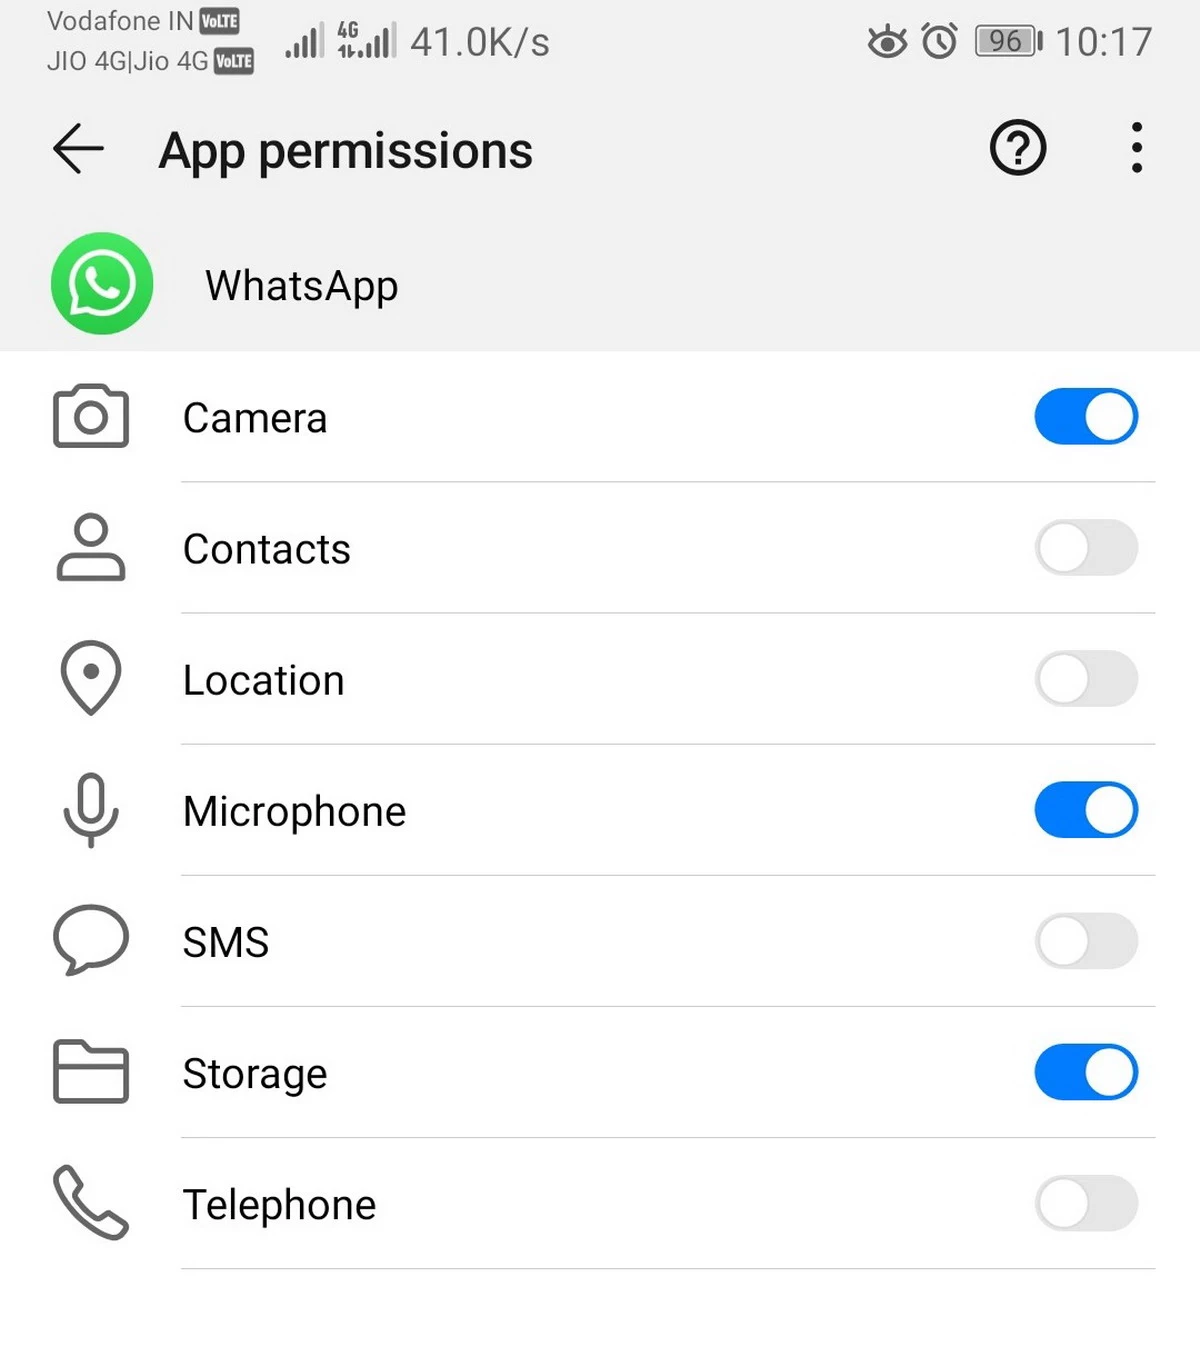 WhatsApp permissions